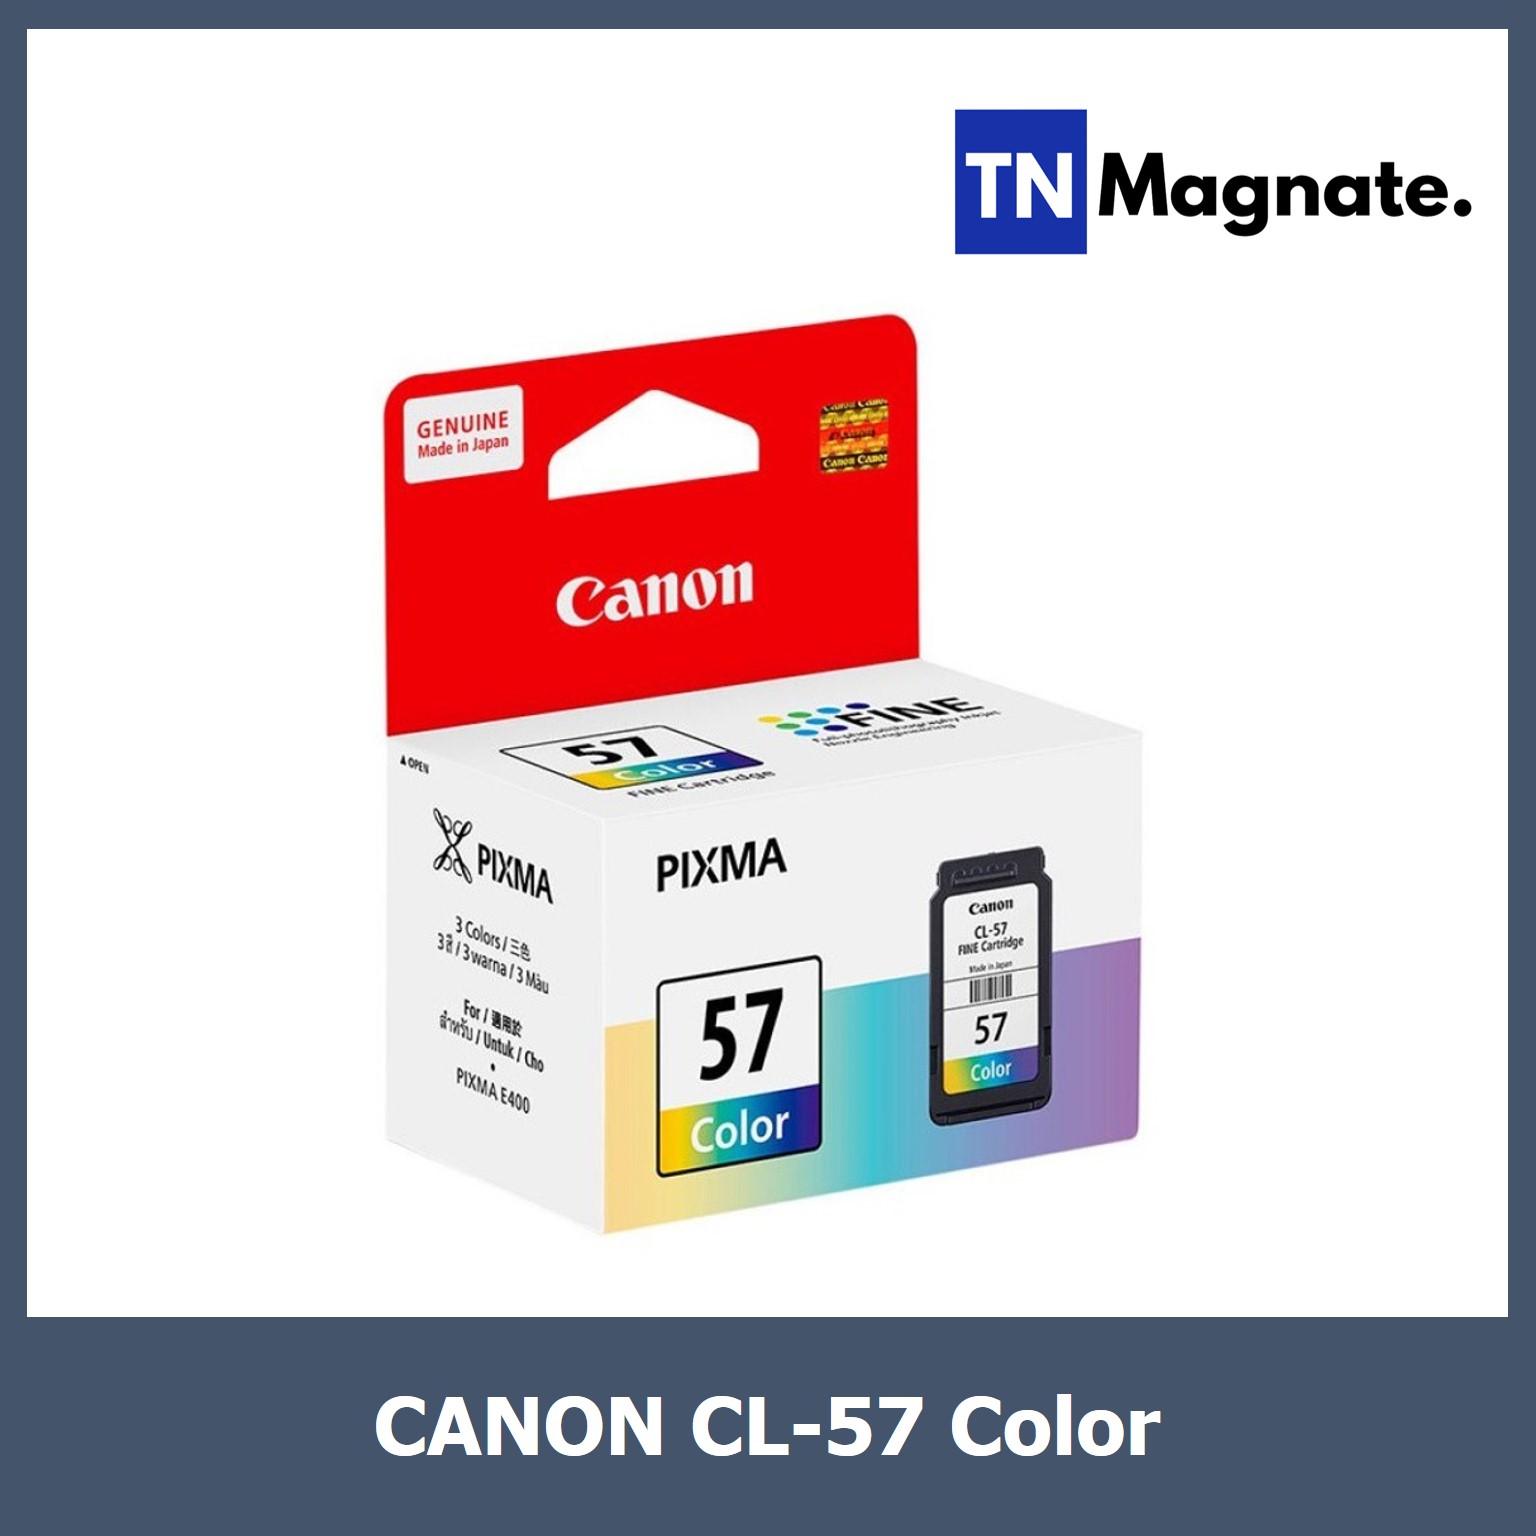 [หมึกพิมพ์] Canon INK PG 47 BK / CL 57 CO (Black/Color) - เลือก 1 กล่อง